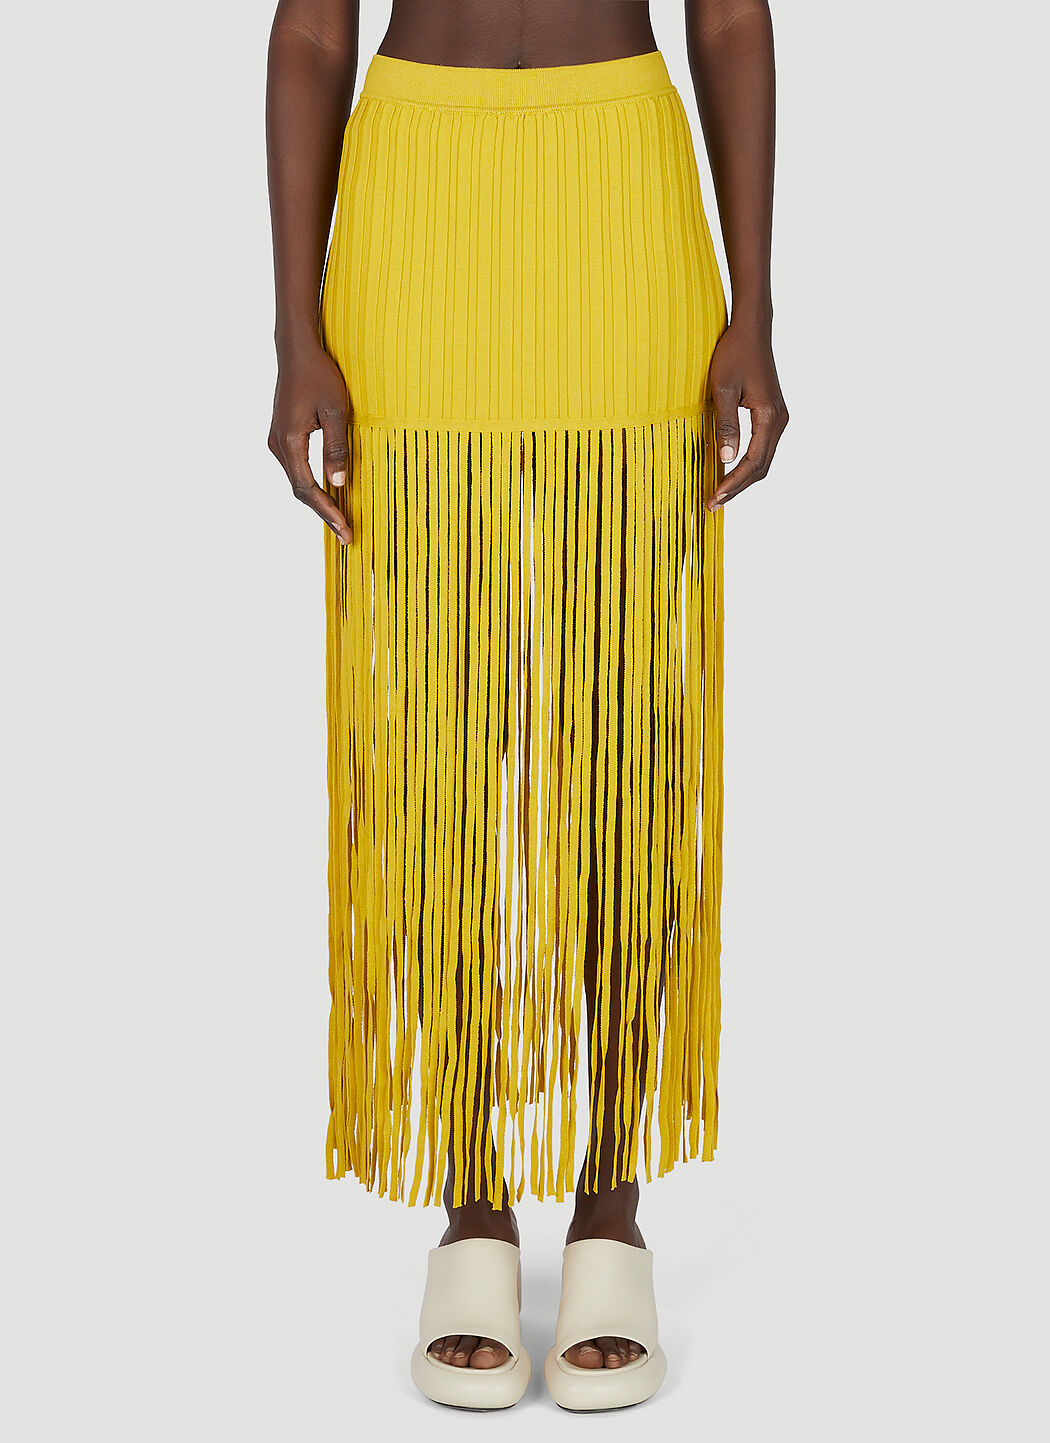 SIMON MILLER Twizz Skirt Yellow smi0249013